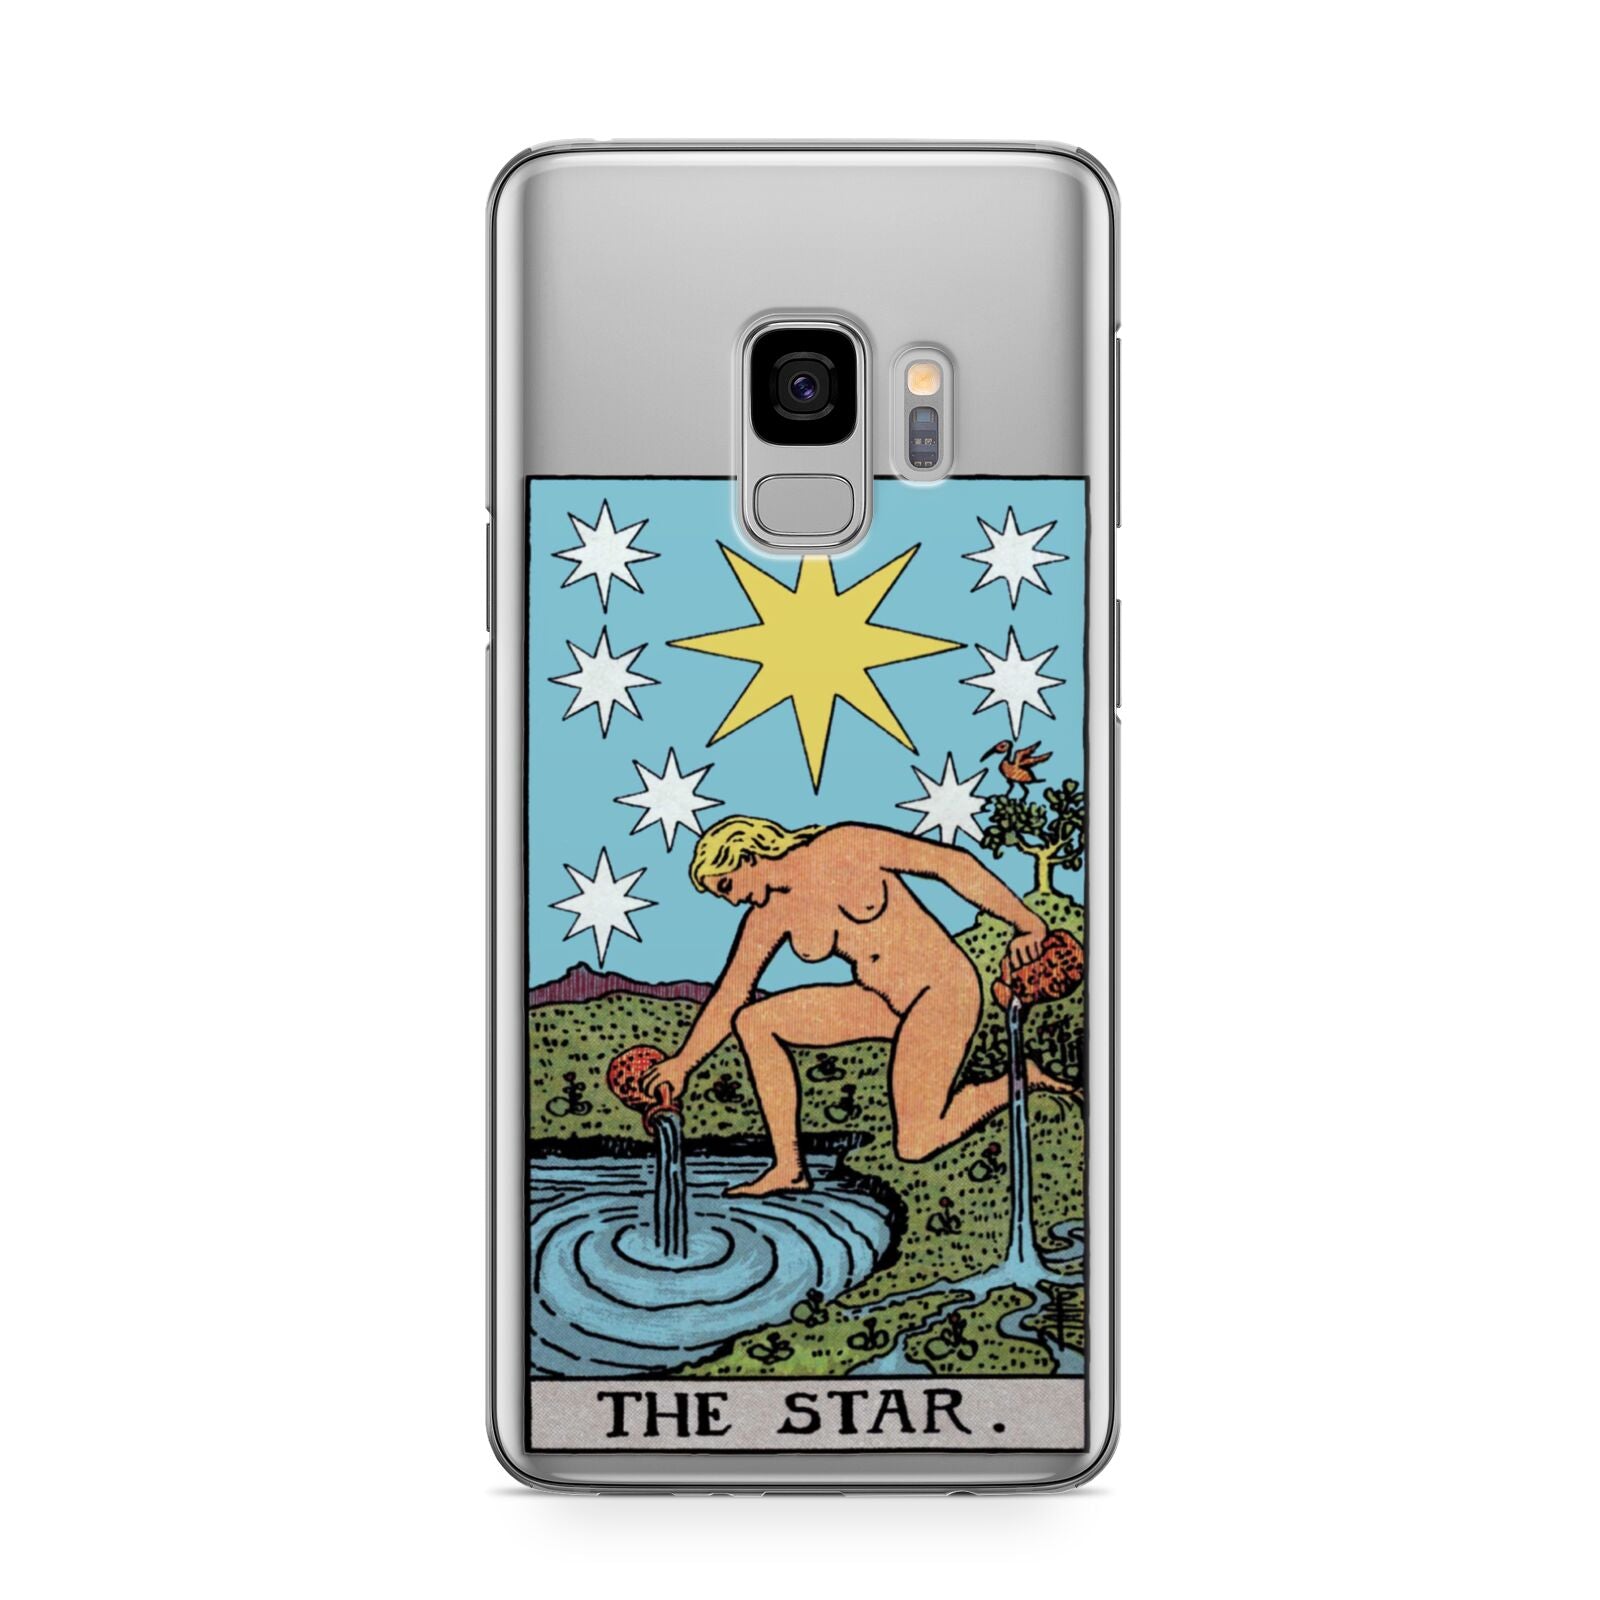 The Star Tarot Card Samsung Galaxy S9 Case